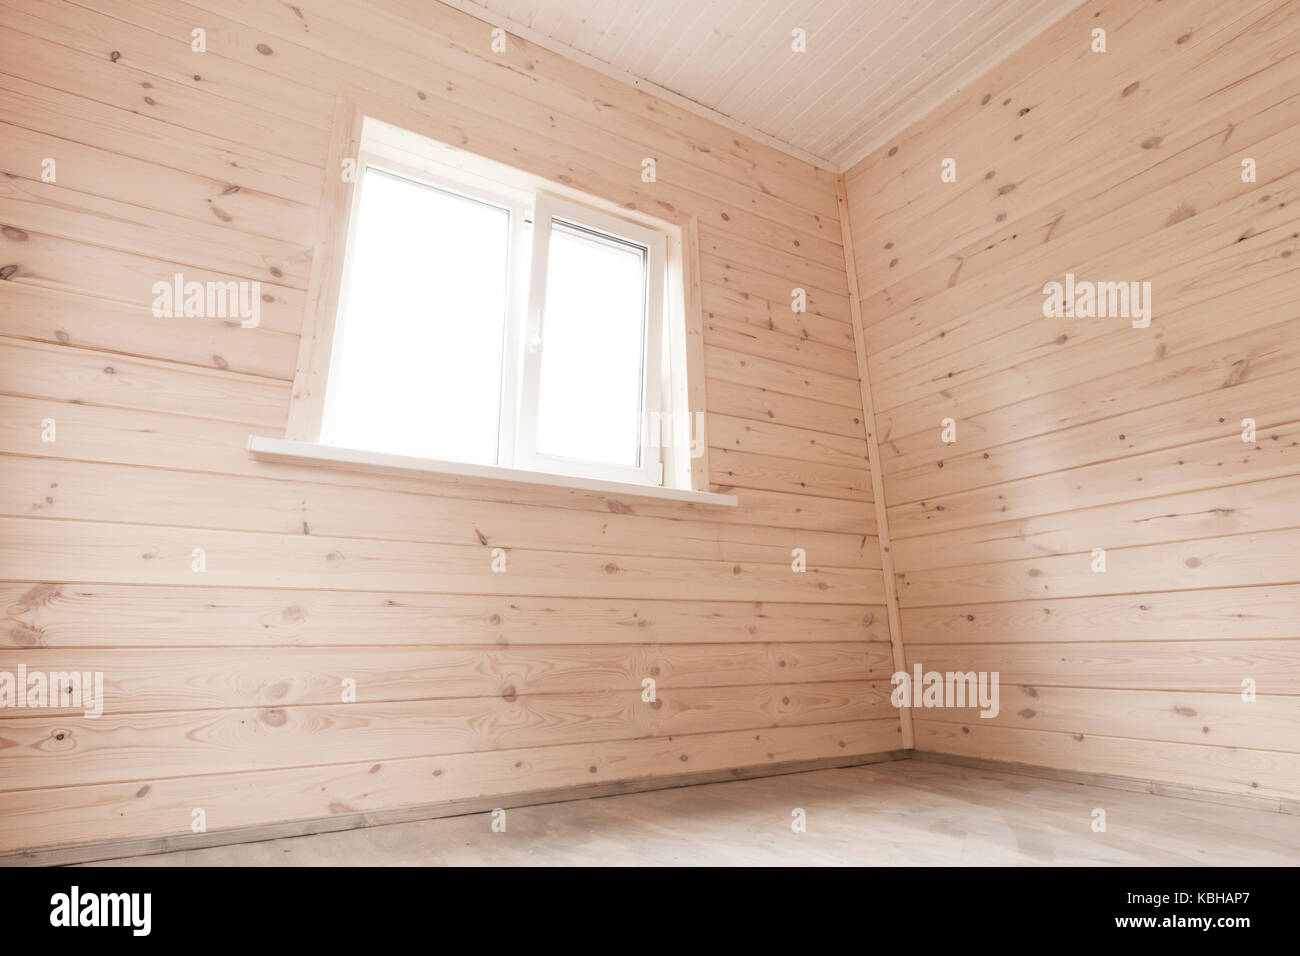 Nuevo espacio vacío interior, paredes de madera y ventana Foto de stock